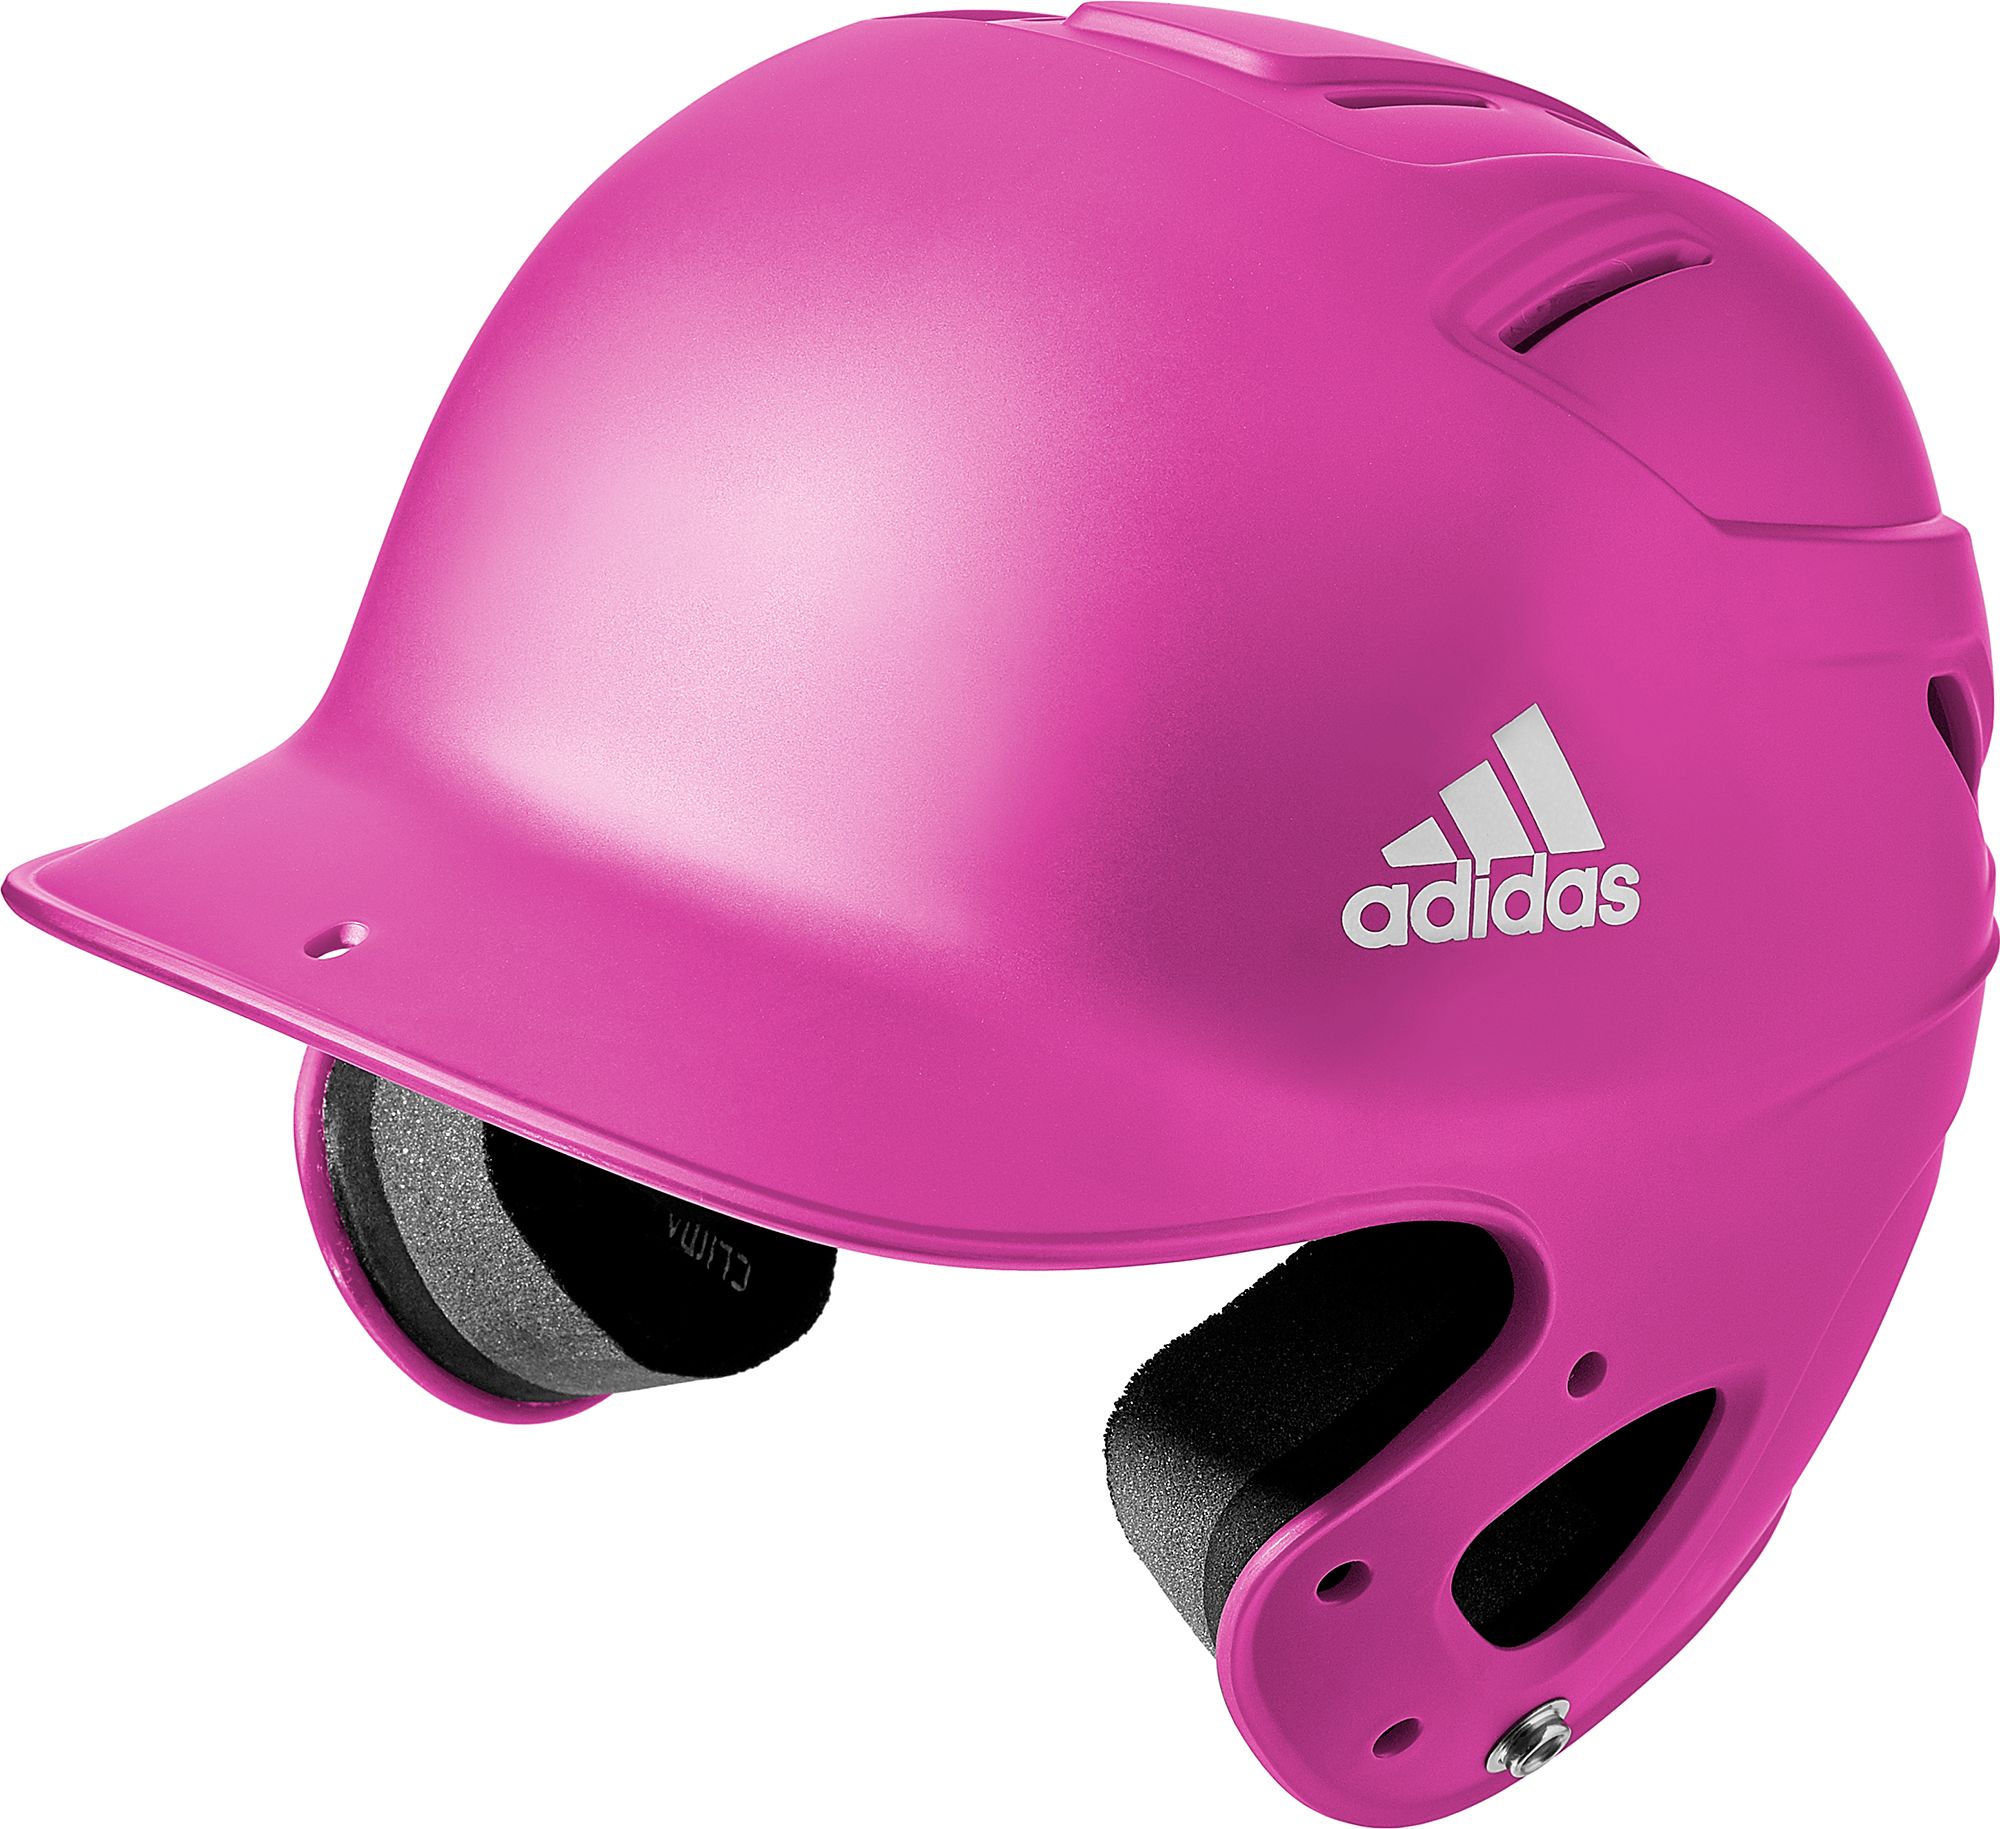 adidas t ball helmet